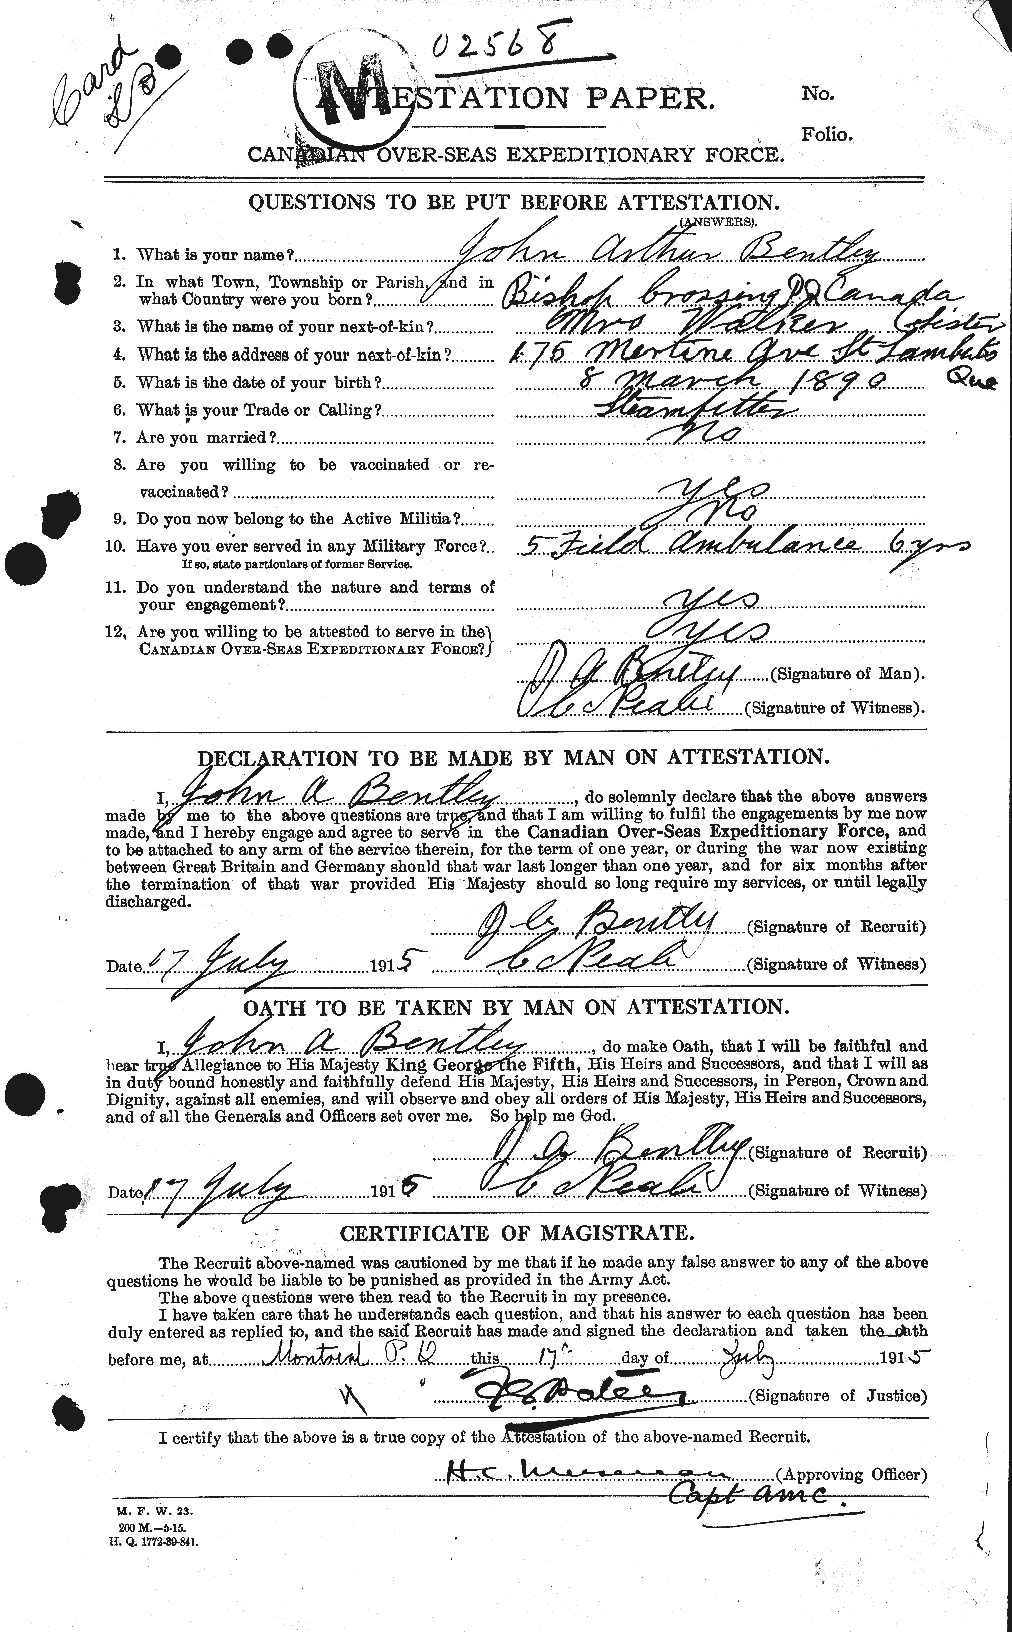 Dossiers du Personnel de la Première Guerre mondiale - CEC 237877a